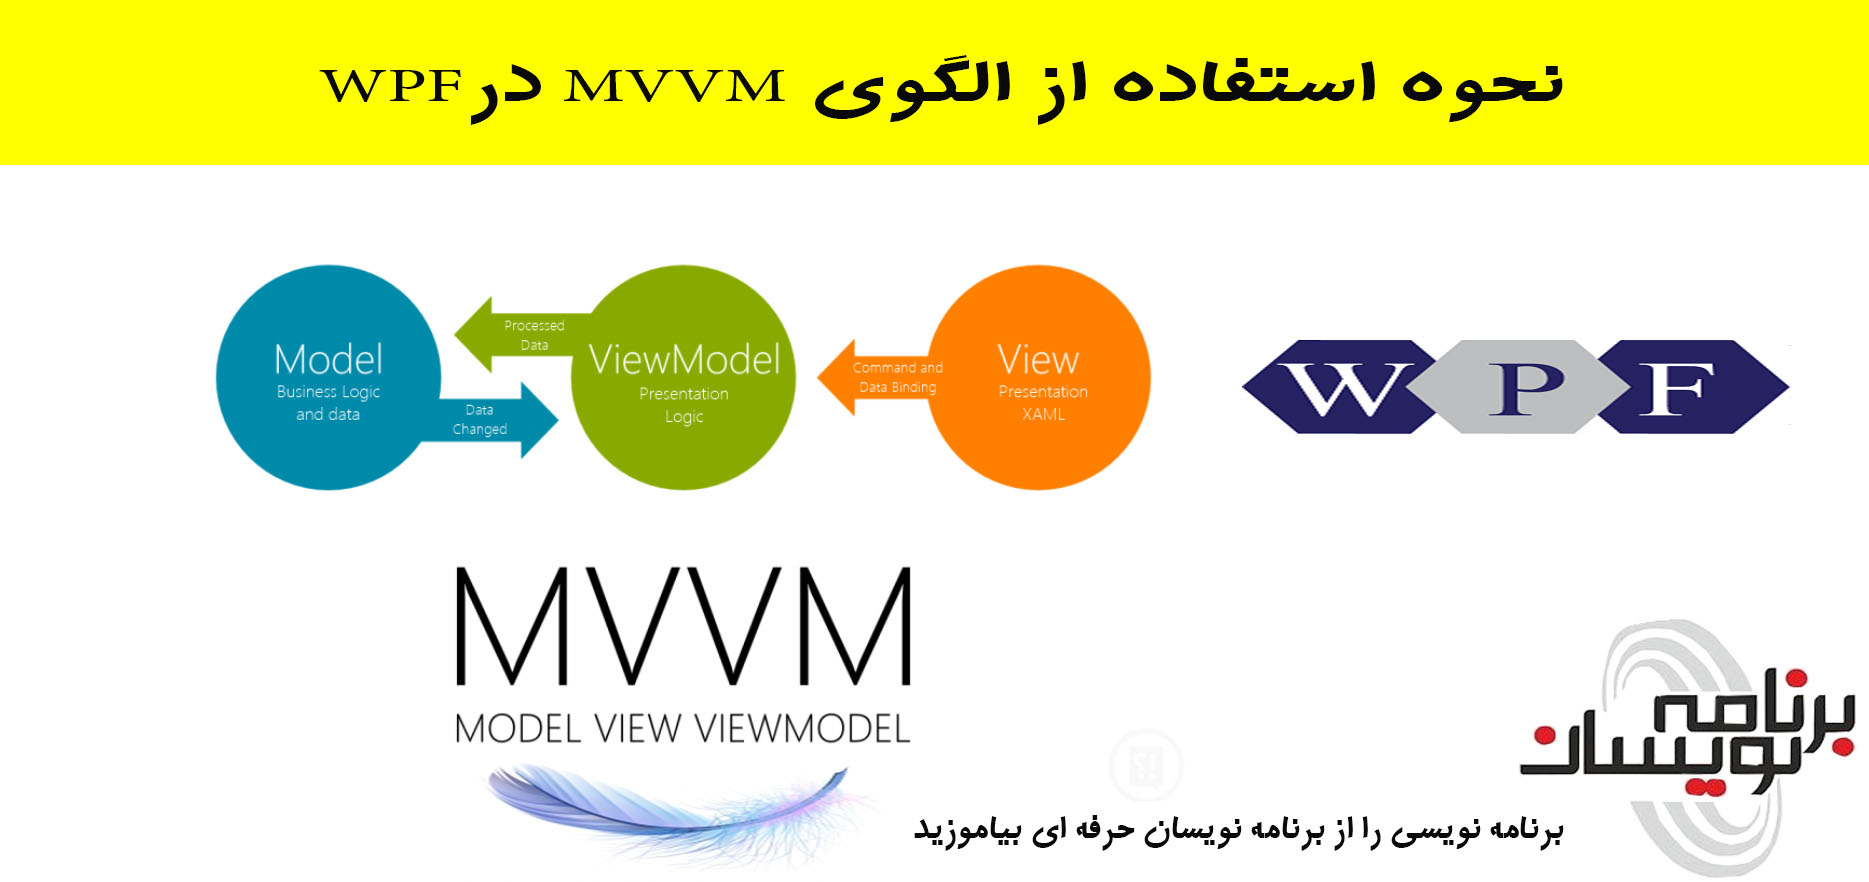  نحوه استفاده از الگوی  MVVM  درWPF 